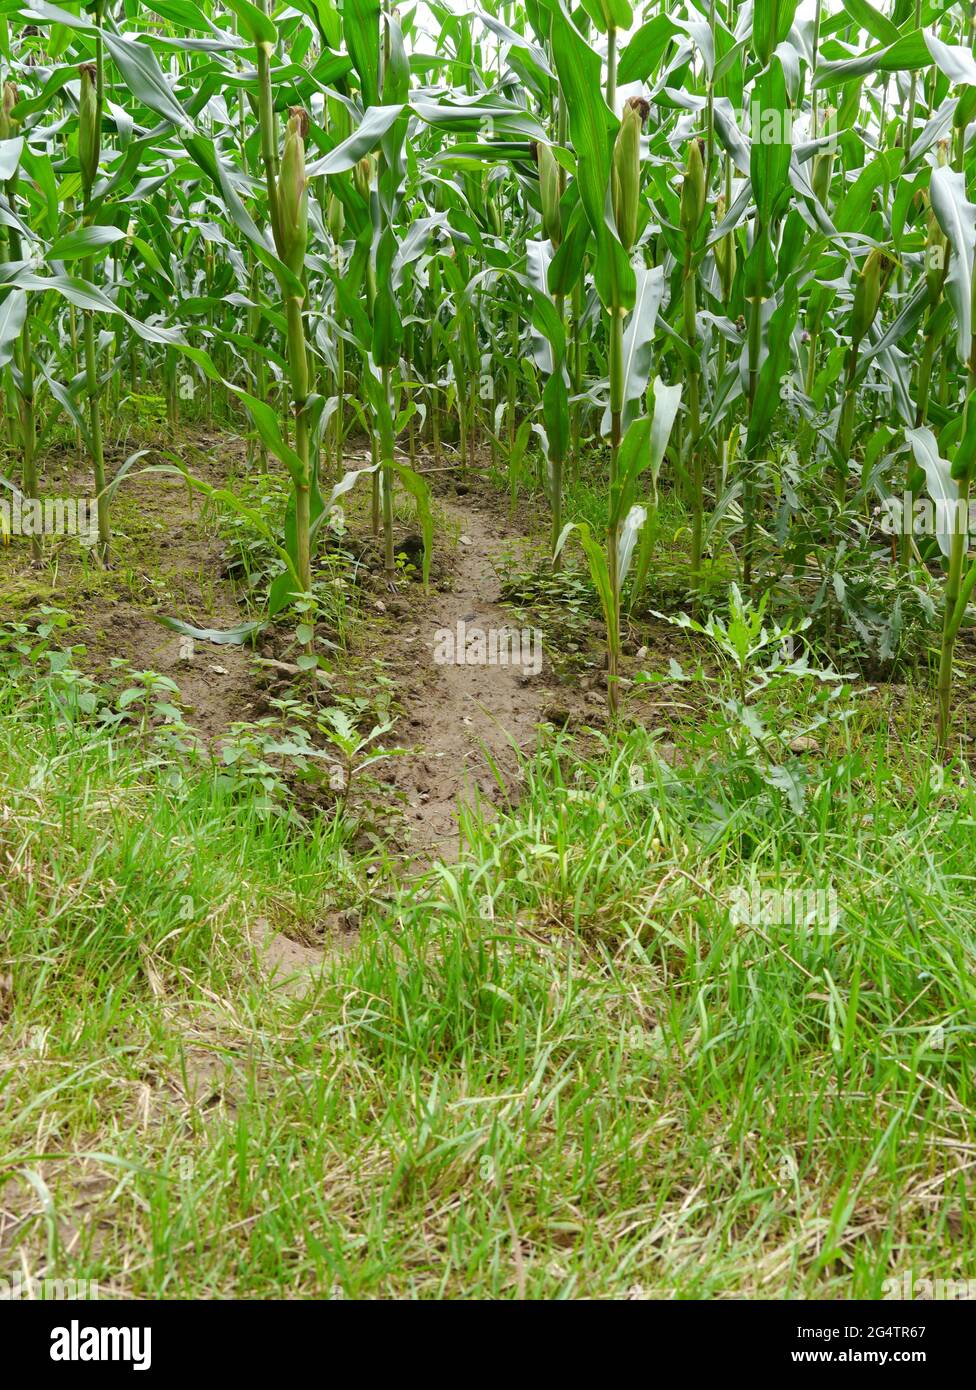 campo de maíz pisoteado por jabalí Foto de stock